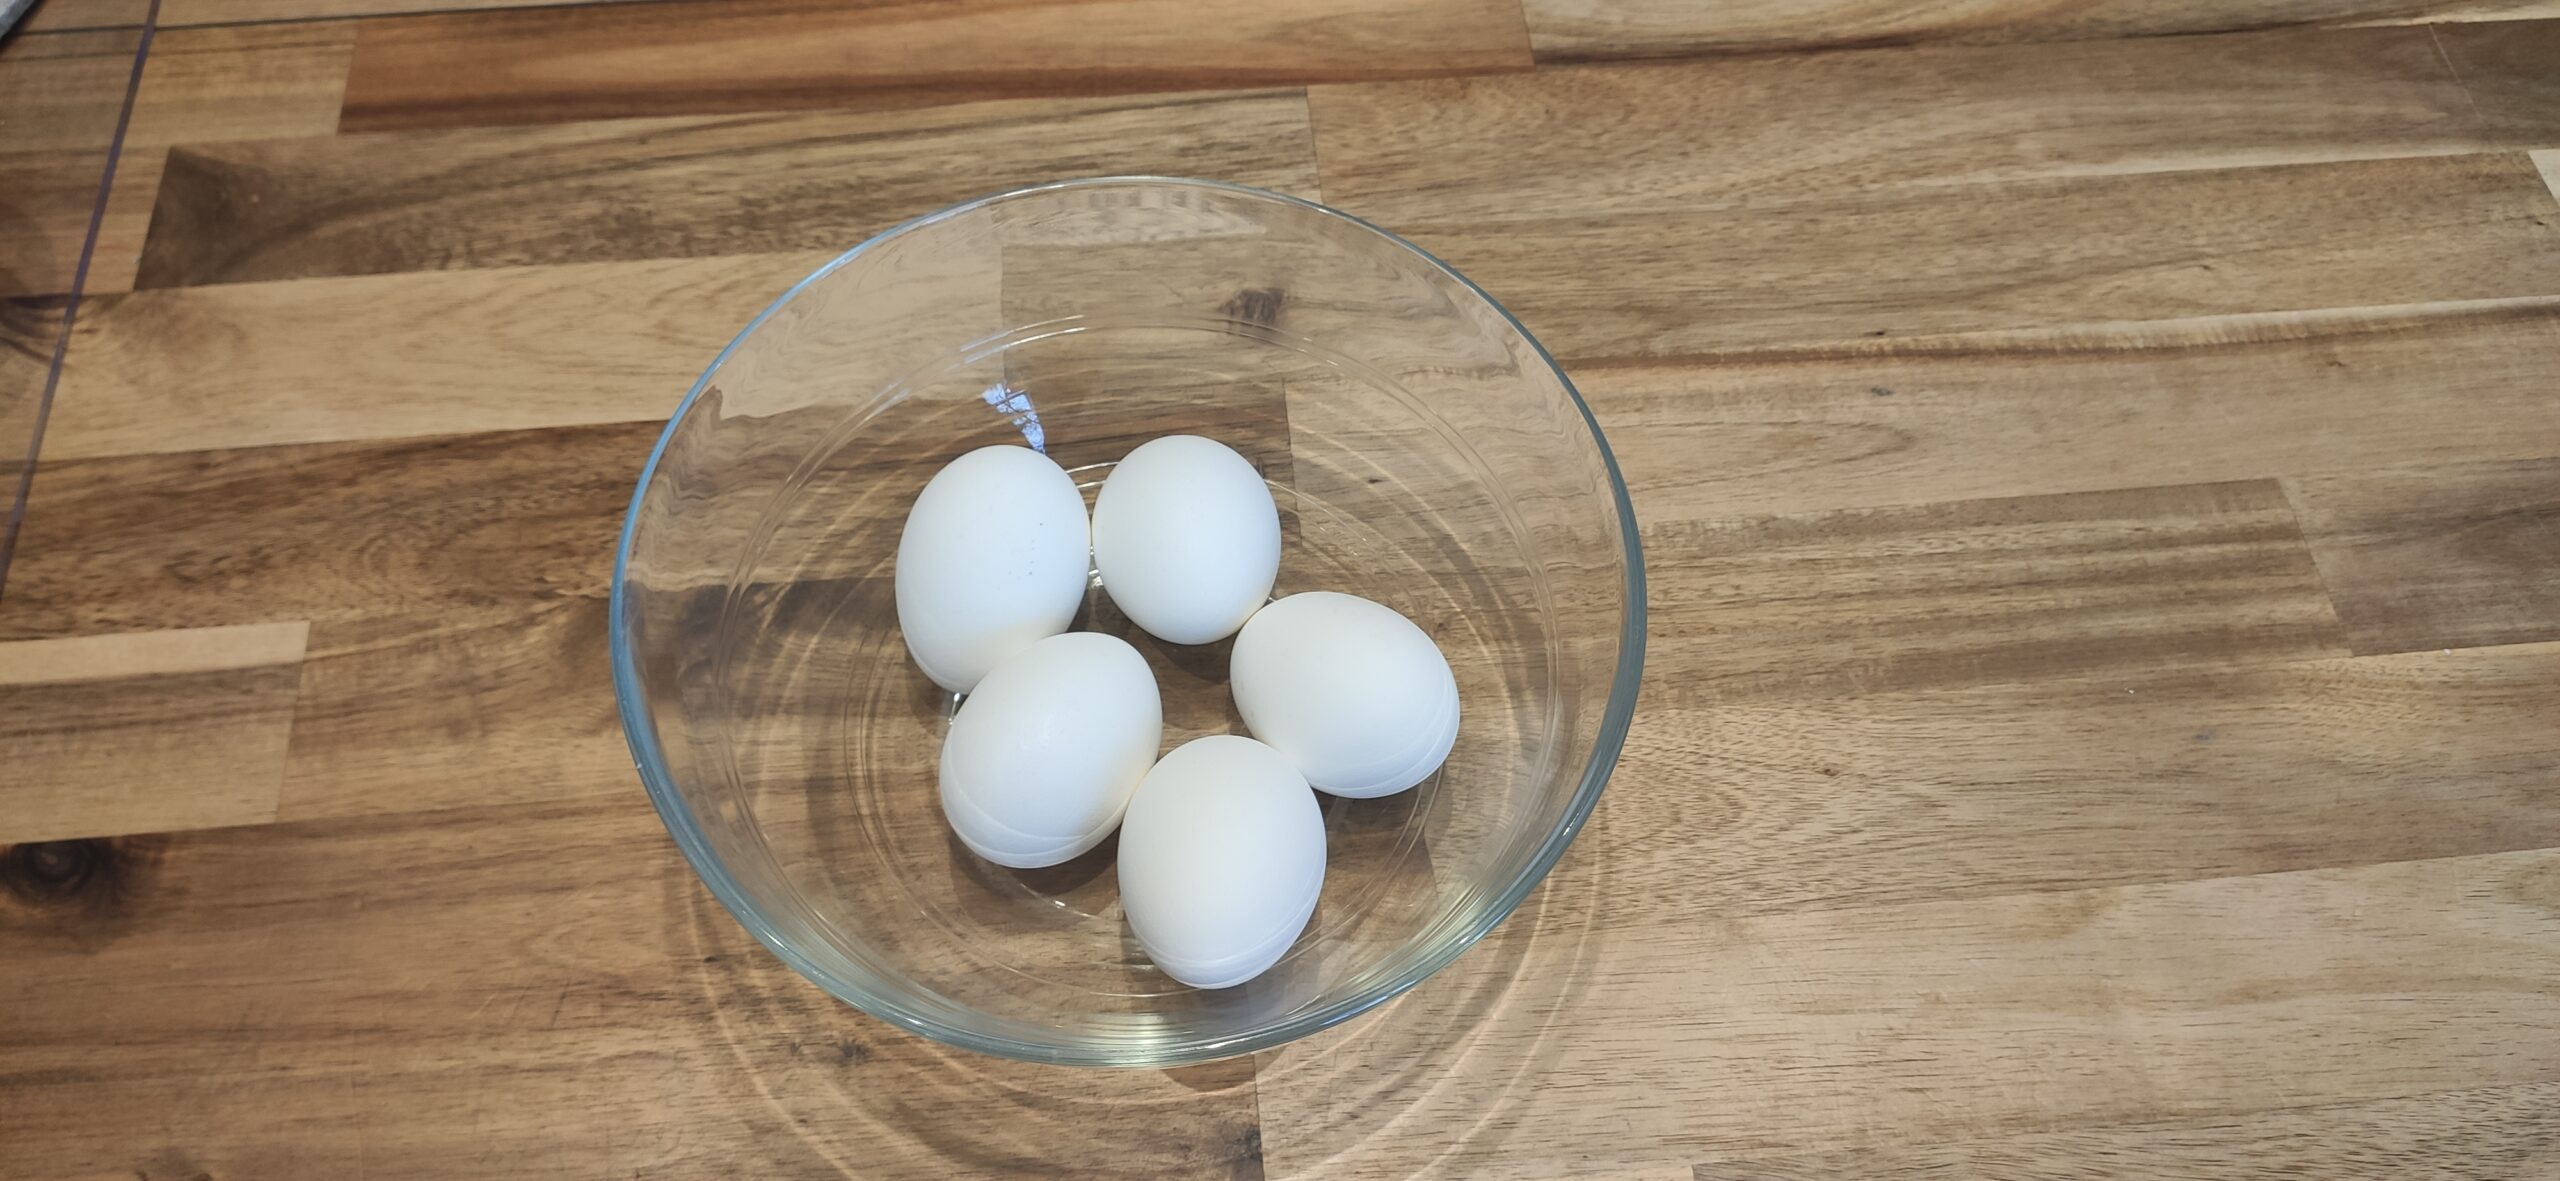 Bild zum Schritt 1 für das Bastel- und DIY-Abenteuer für Kinder: 'Zuerst stellt ihr euch die gekochten Eier bereit.'